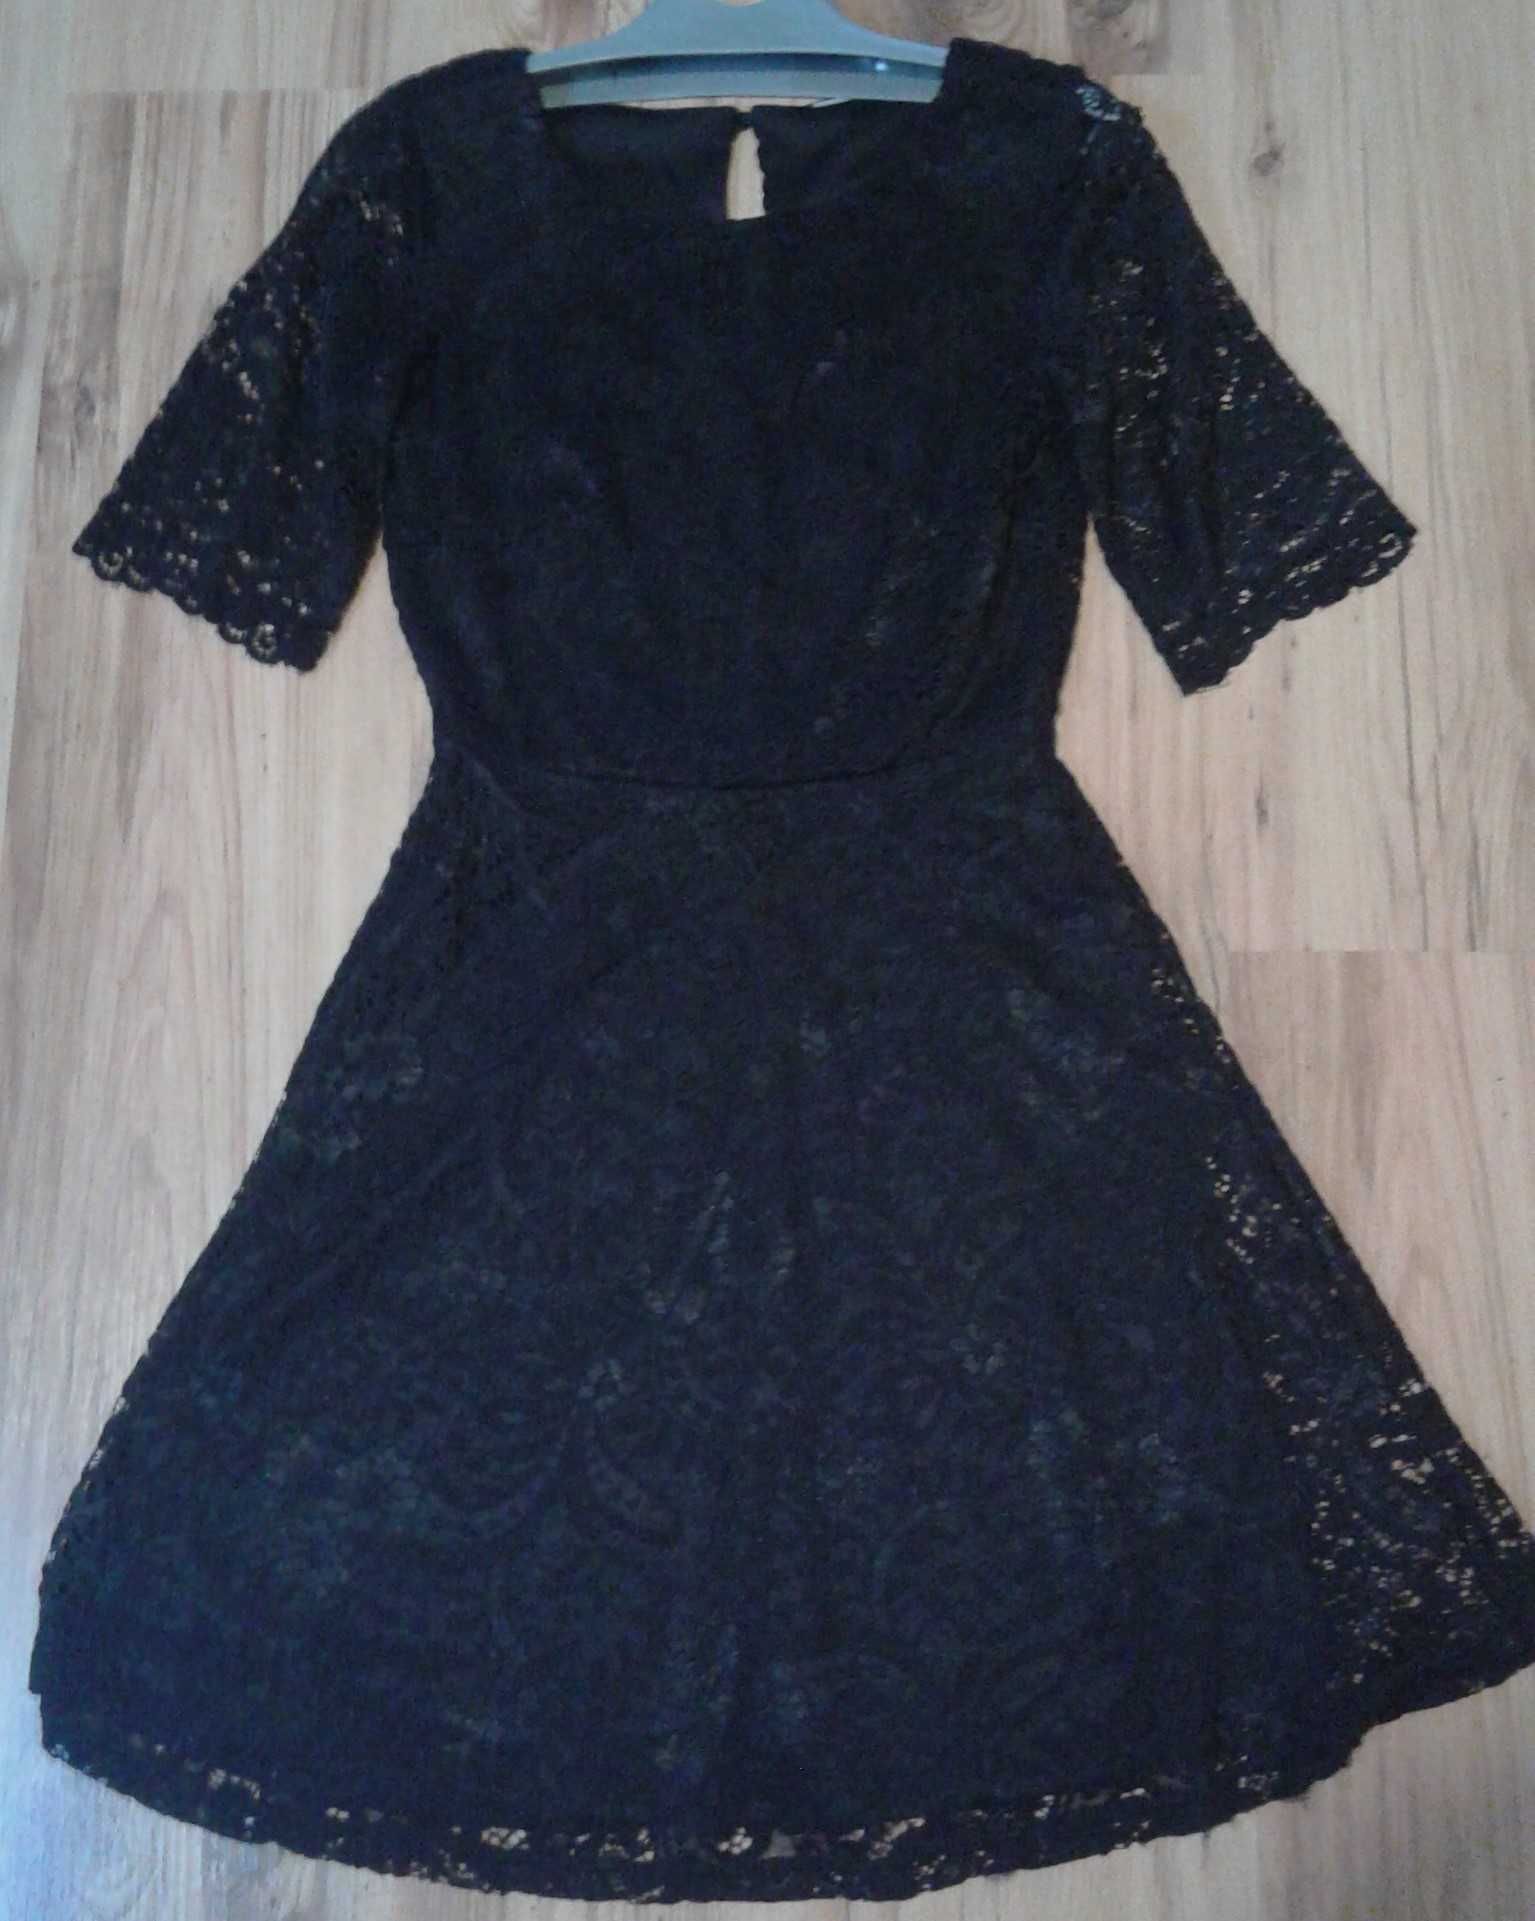 piękna czarna koronkowa sukienka XS firmy JDYPARIS